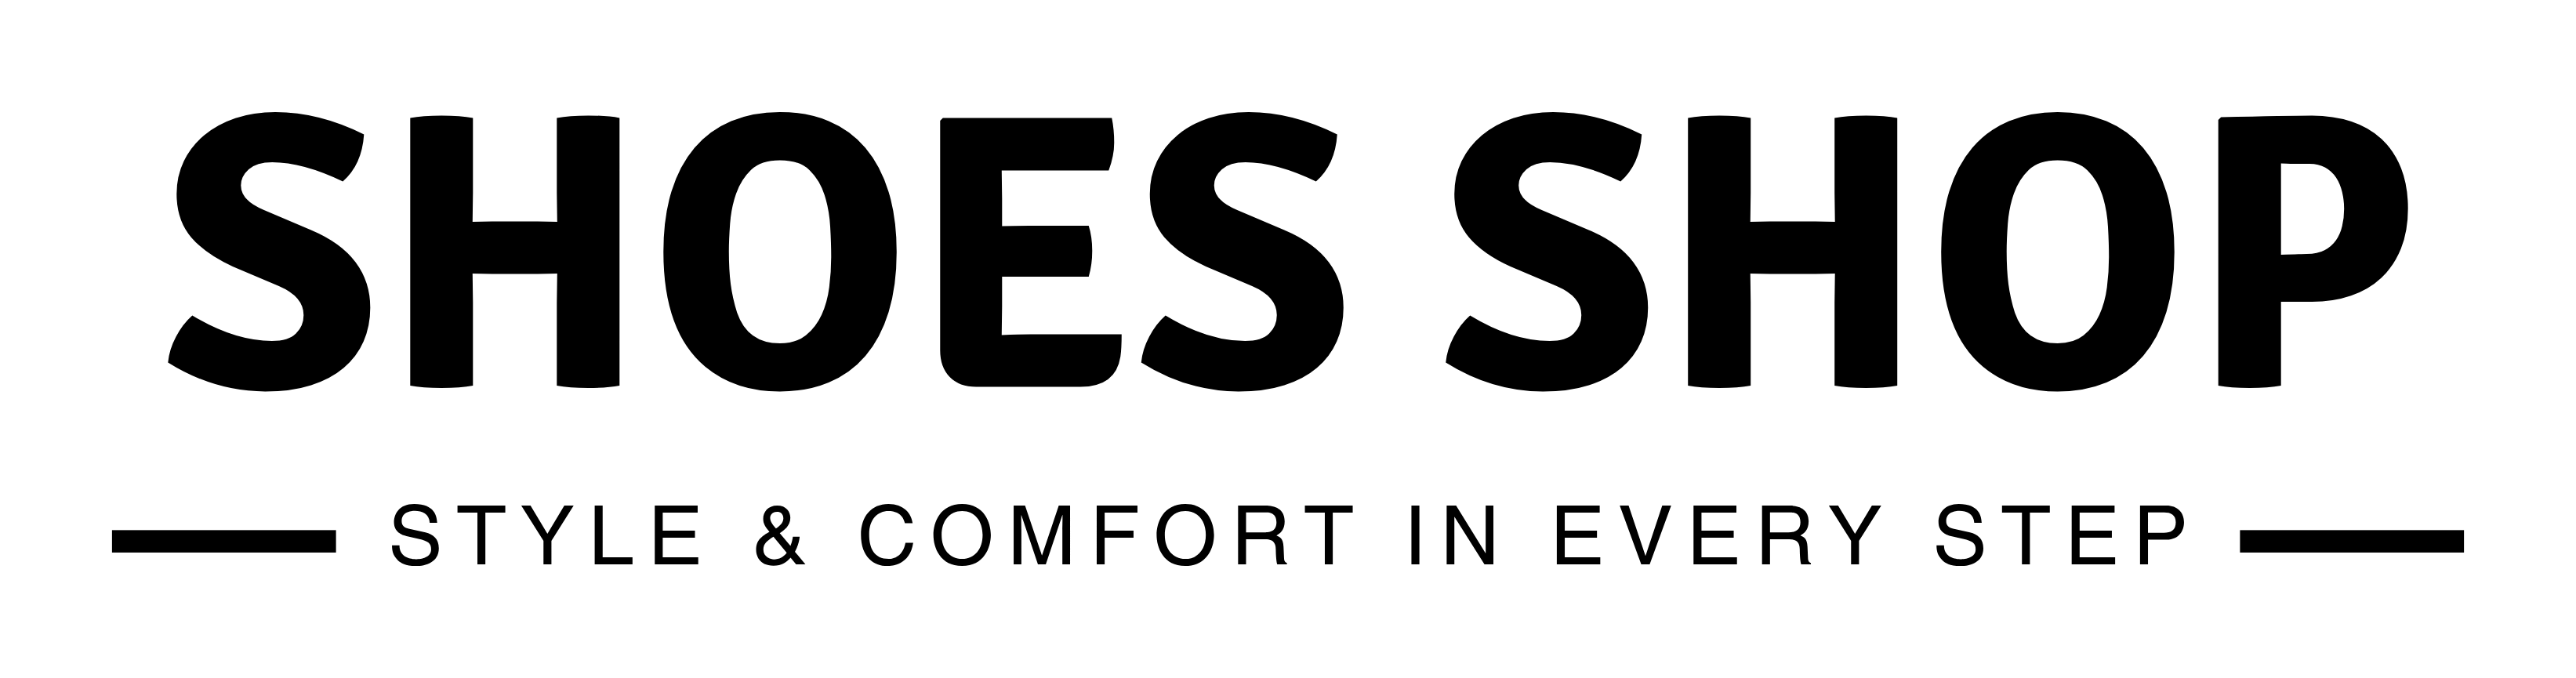 Shoes Shop - logo